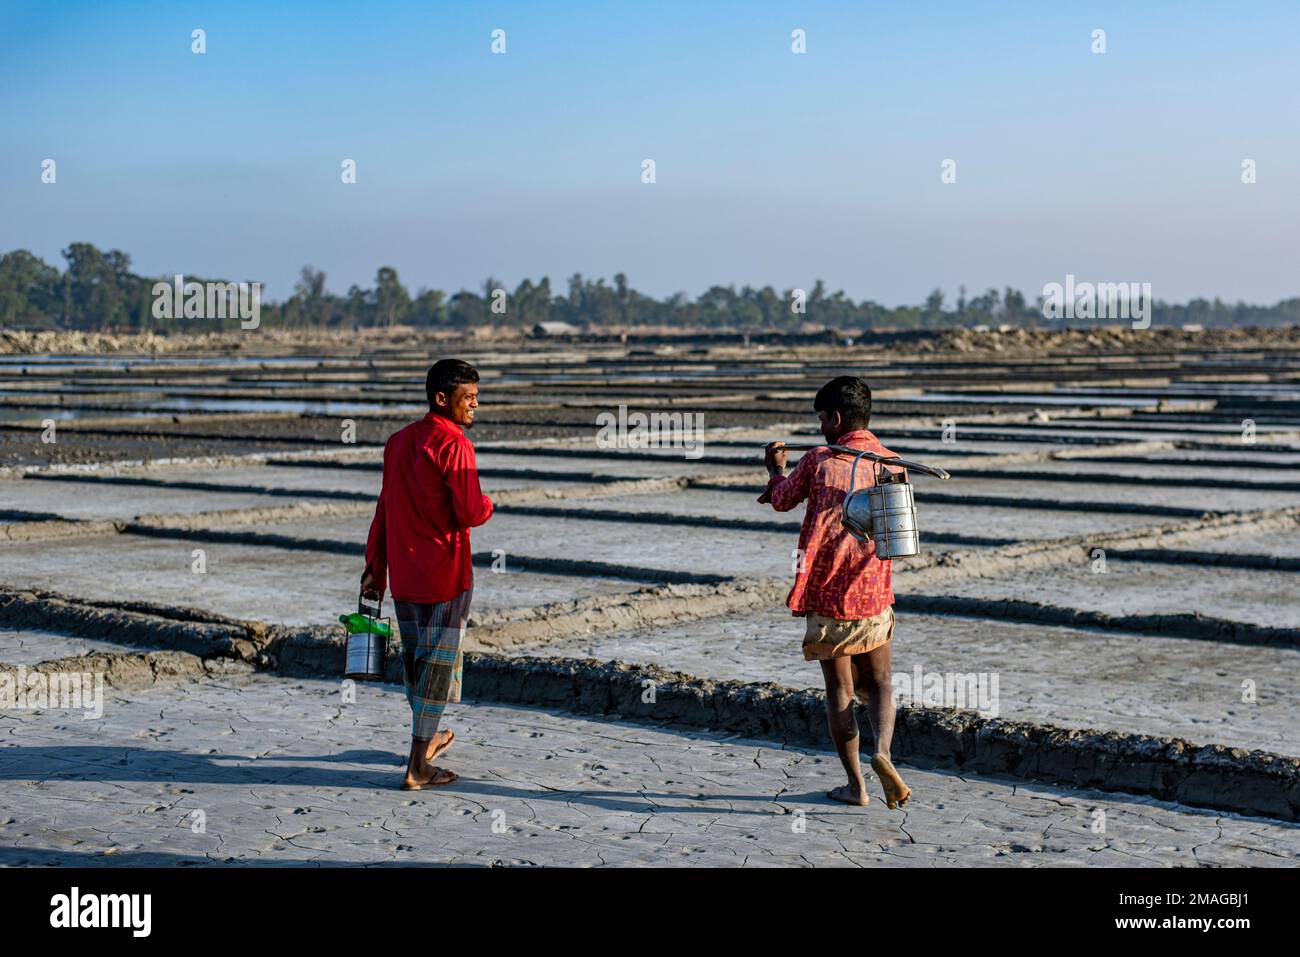 Ein Bauer entlädt Rohsalz auf dem Salzfeld in Chittagong, Bangladesch. Dieses Foto wird am Ziel von Banshkhali Upazila in der Division Chittagong aufgenommen. Die Salzindustrie, eine der größten arbeitsintensiven Hüttenindustrien Bangladeschs, nimmt fast 5 Millionen Menschen direkt oder indirekt auf. Die gesamte Wertschöpfungskette der Salzindustrie in Bangladesch umfasst im Wesentlichen zwei Teilsektoren: Den Raffinierungsprozess, der von Salzmühlen betrieben wird, und den Rohsalzproduktionsprozess, an dem ein erheblicher Teil der Randbauern der Küste Bangladeschs beteiligt ist. ( Stockfoto